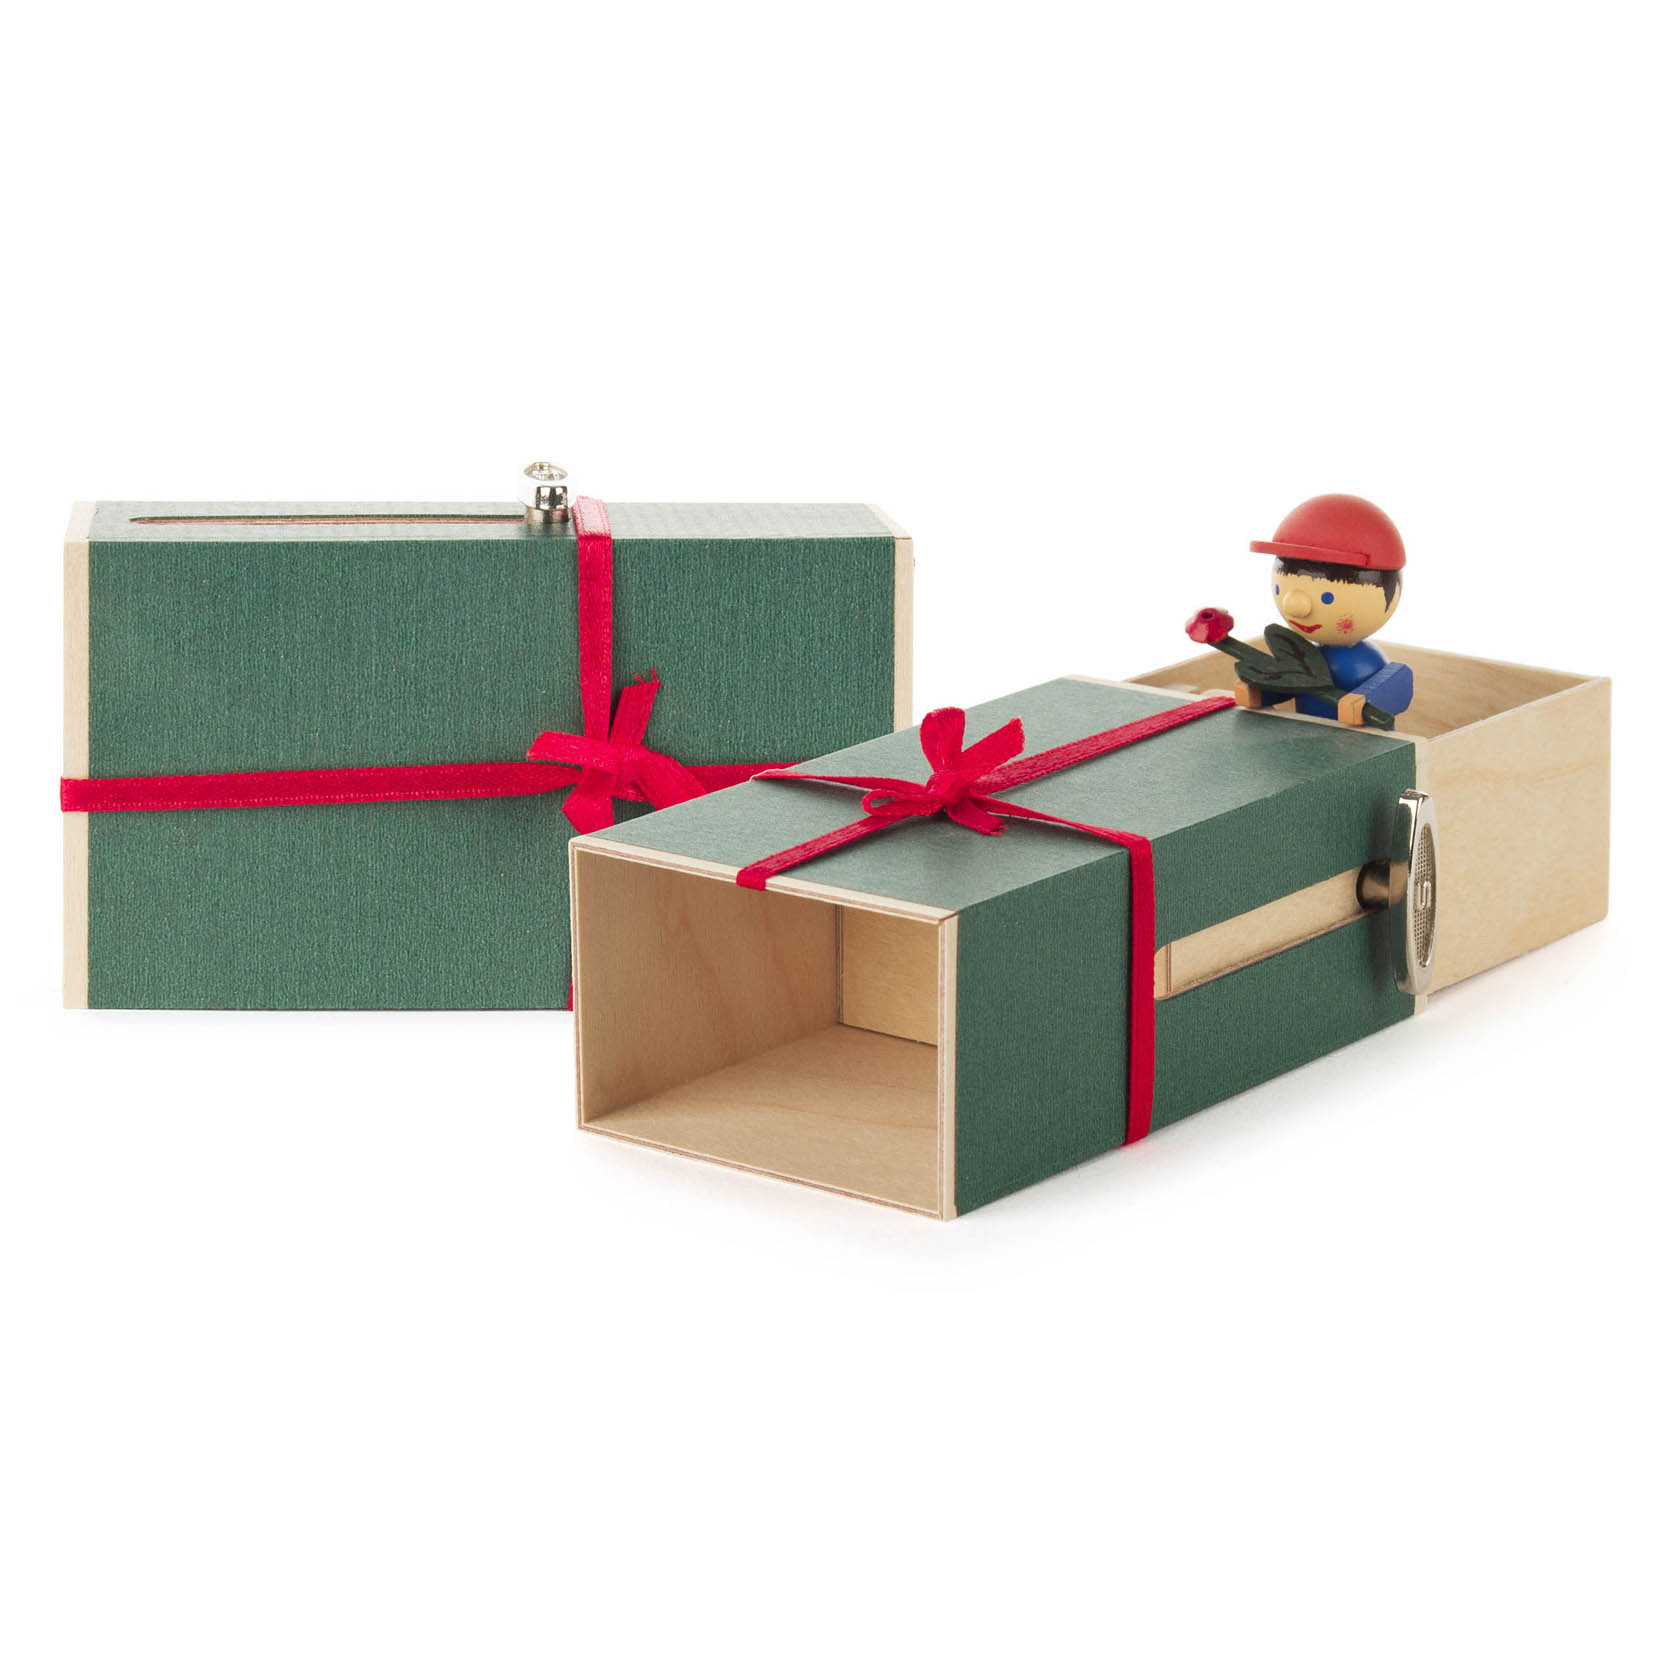 Schiebebox "Geschenke-Box" Junge mit Blume Melodie: It-s a small world